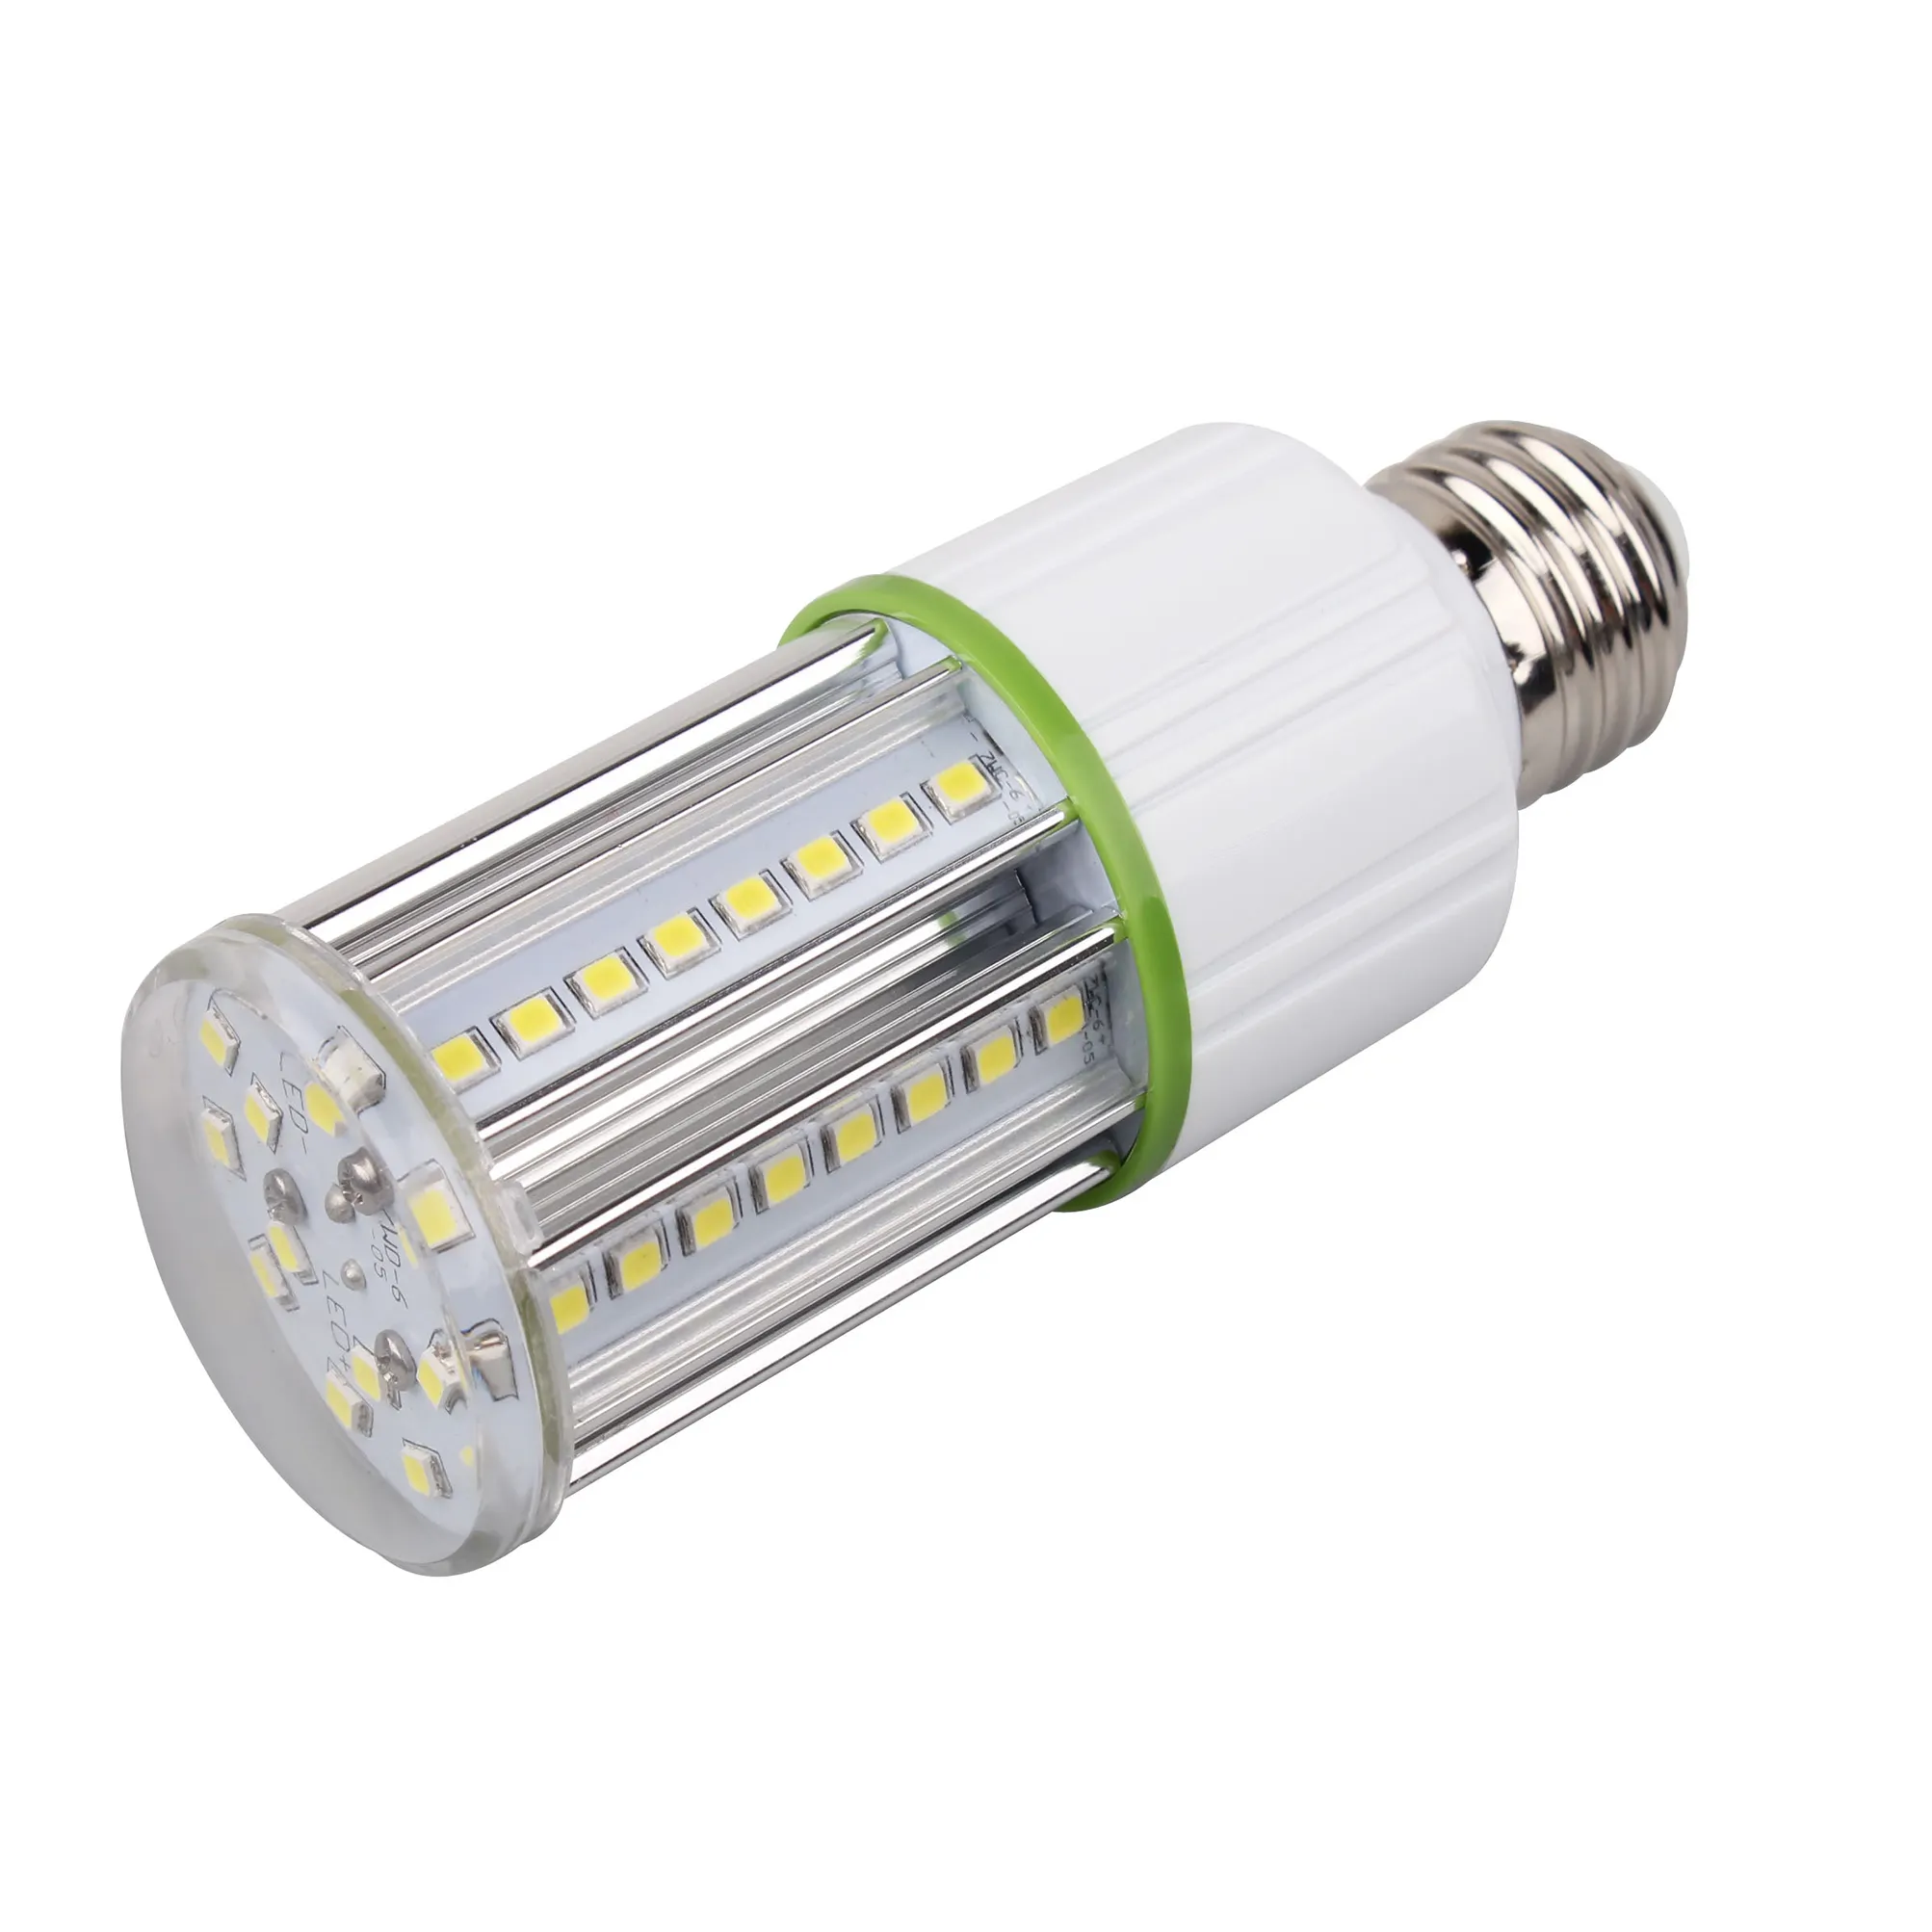 الصين بالجملة تصنيع توفير الطاقة LED الذرة مصابيح كهربائية 7w 9w 12w E26 G24